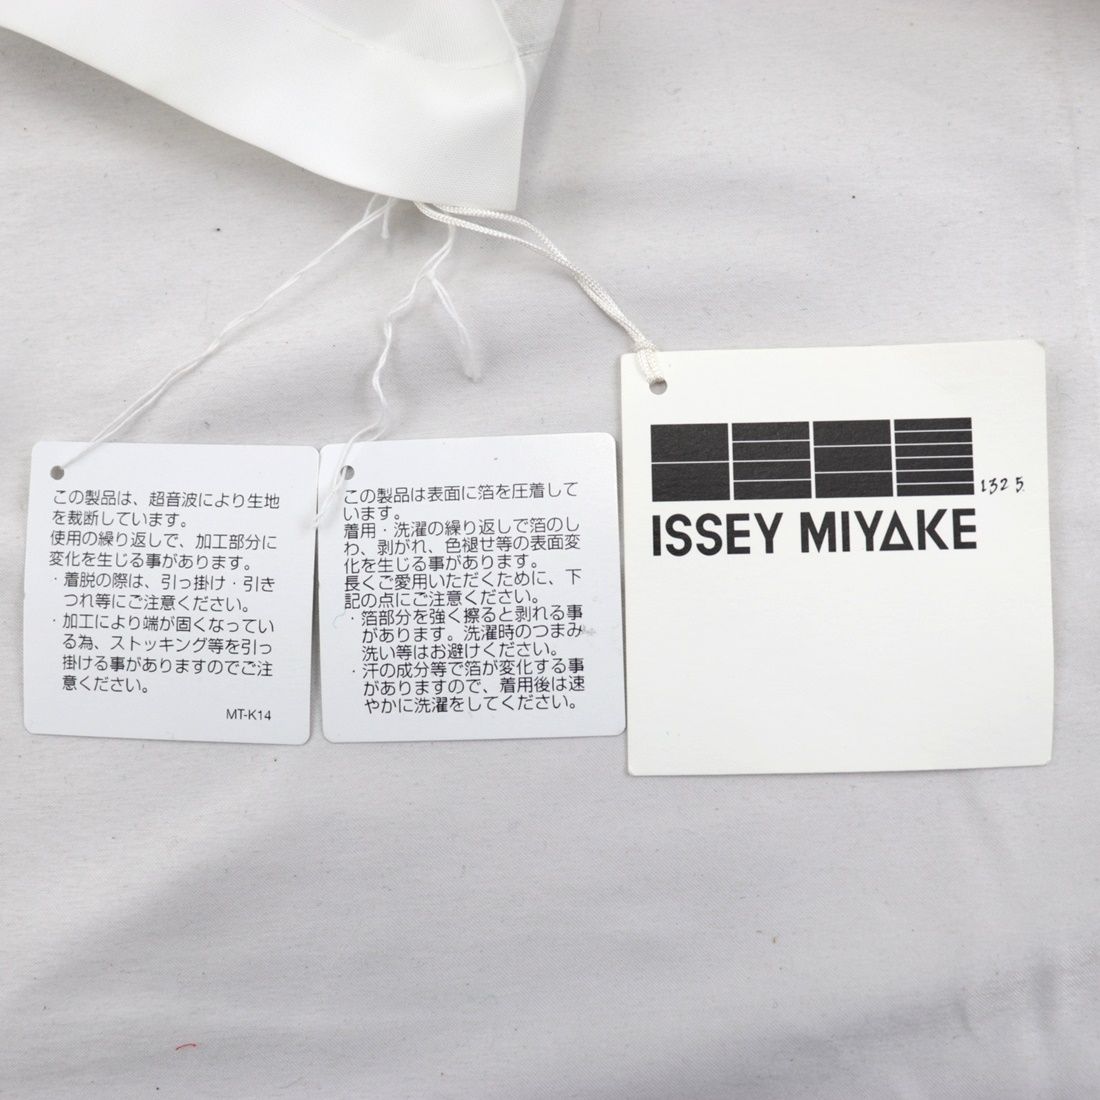 イッセイミヤケ 132 5. 3Dノースリーブ ブラウス レディース 白 3 立体 変形 折り紙 ISSEY MIYAKE